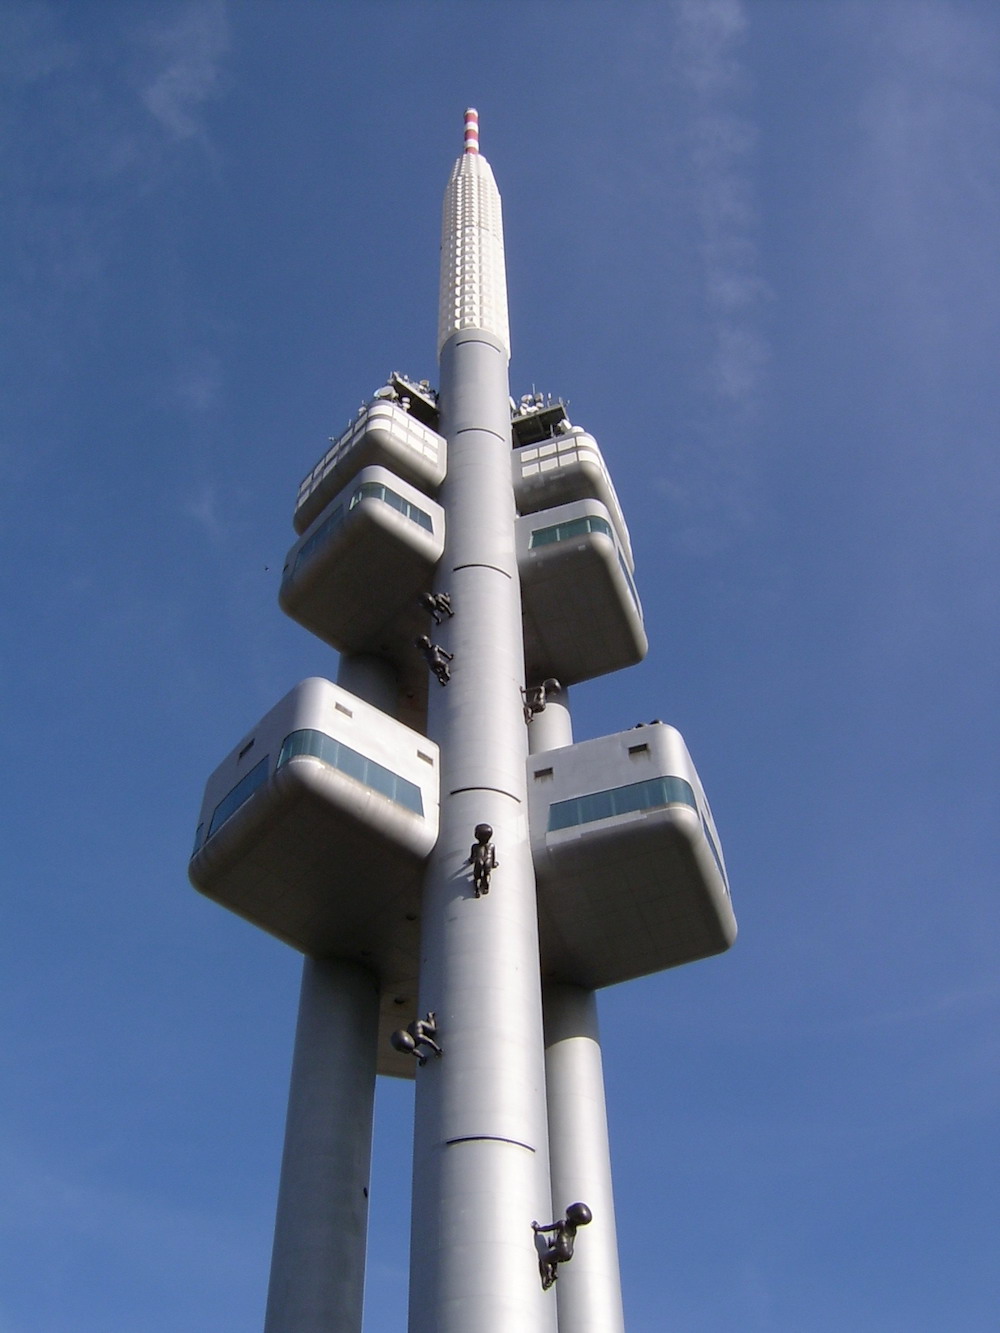 Žižkov TV Tower. Image: Norbert Požár under a CC License